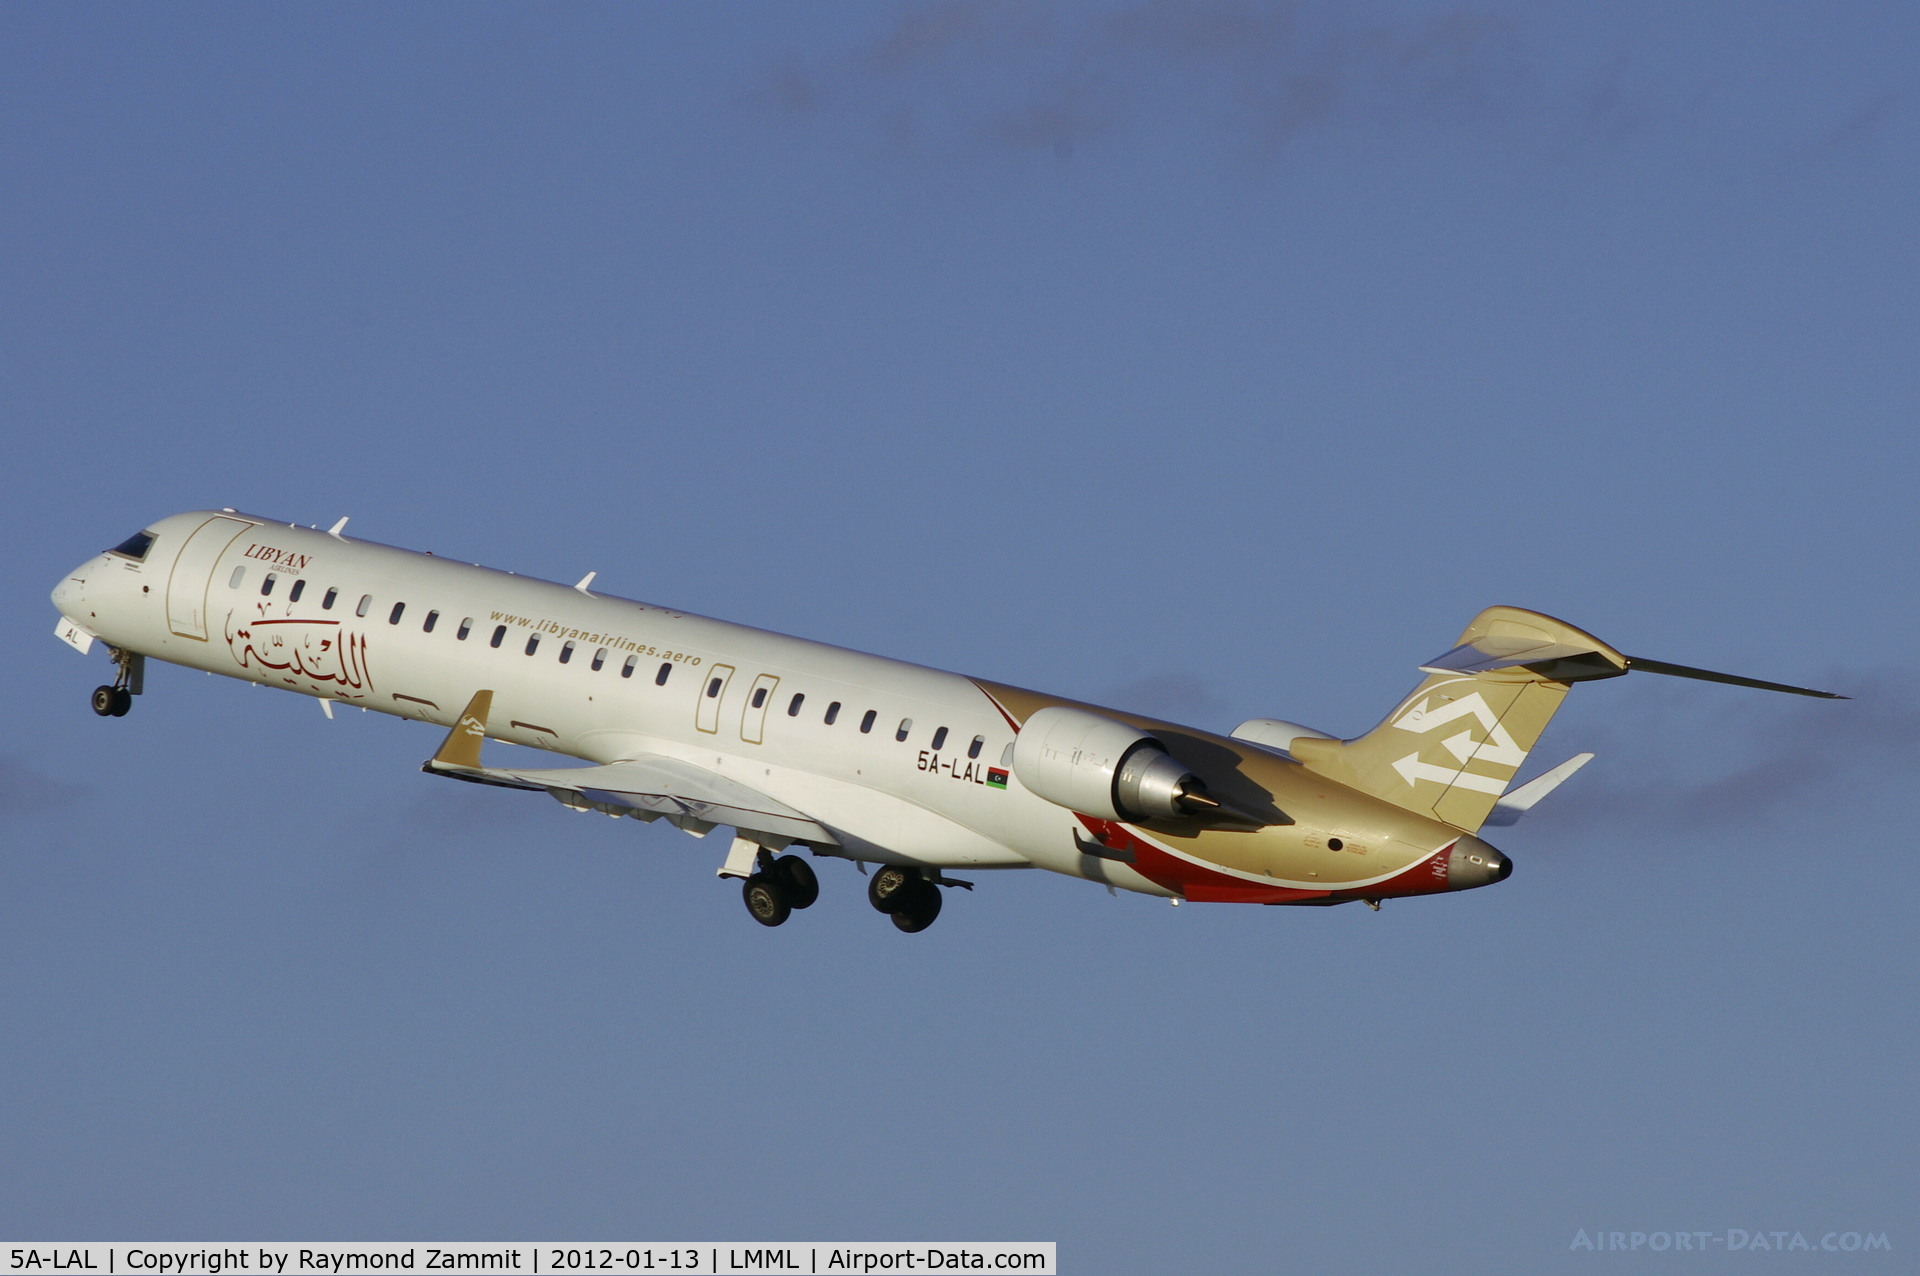 5A-LAL, 2010 Bombardier CRJ-900ER (CL-600-2D24) C/N 15256, Bombardier CRJ900ER 5A-LAL Libyan Airlines